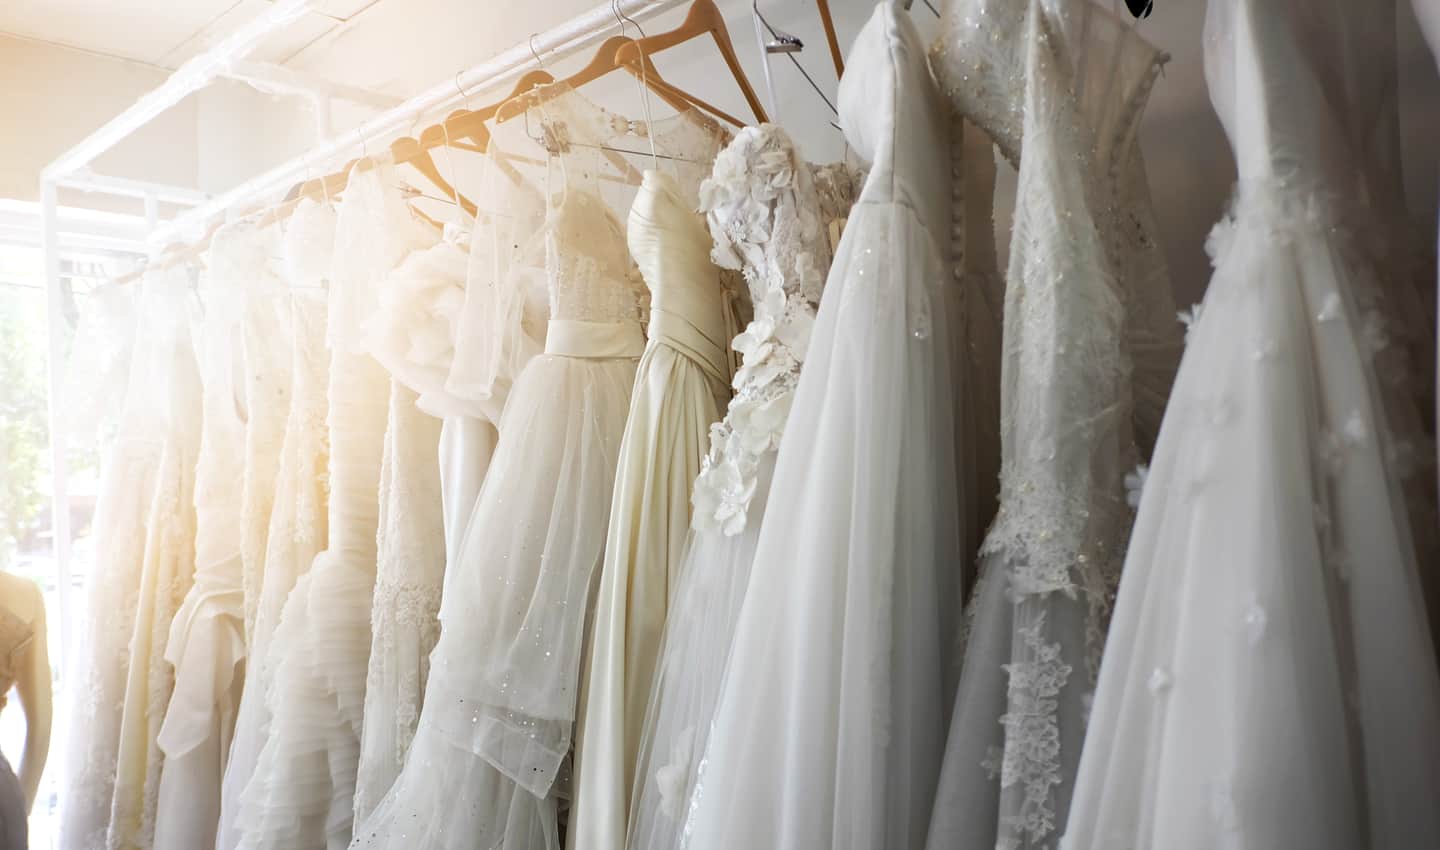  5 meilleurs endroits pour vendre des robes de mariée en ligne